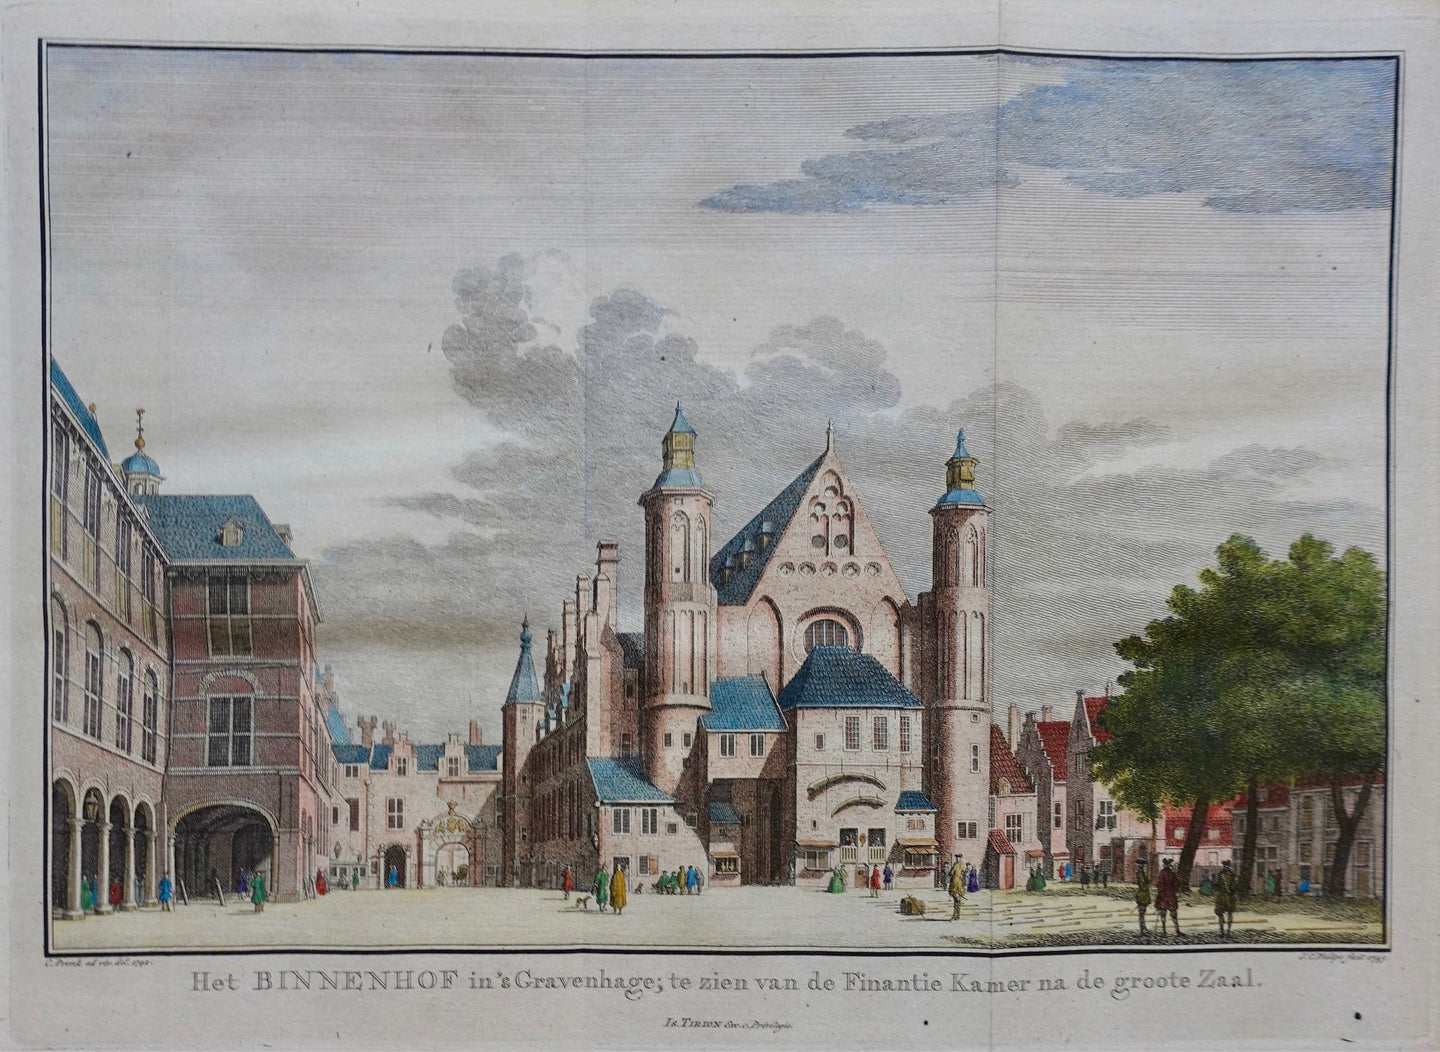 Den Haag Binnenhof - JC Philips / I Tirion - 1745